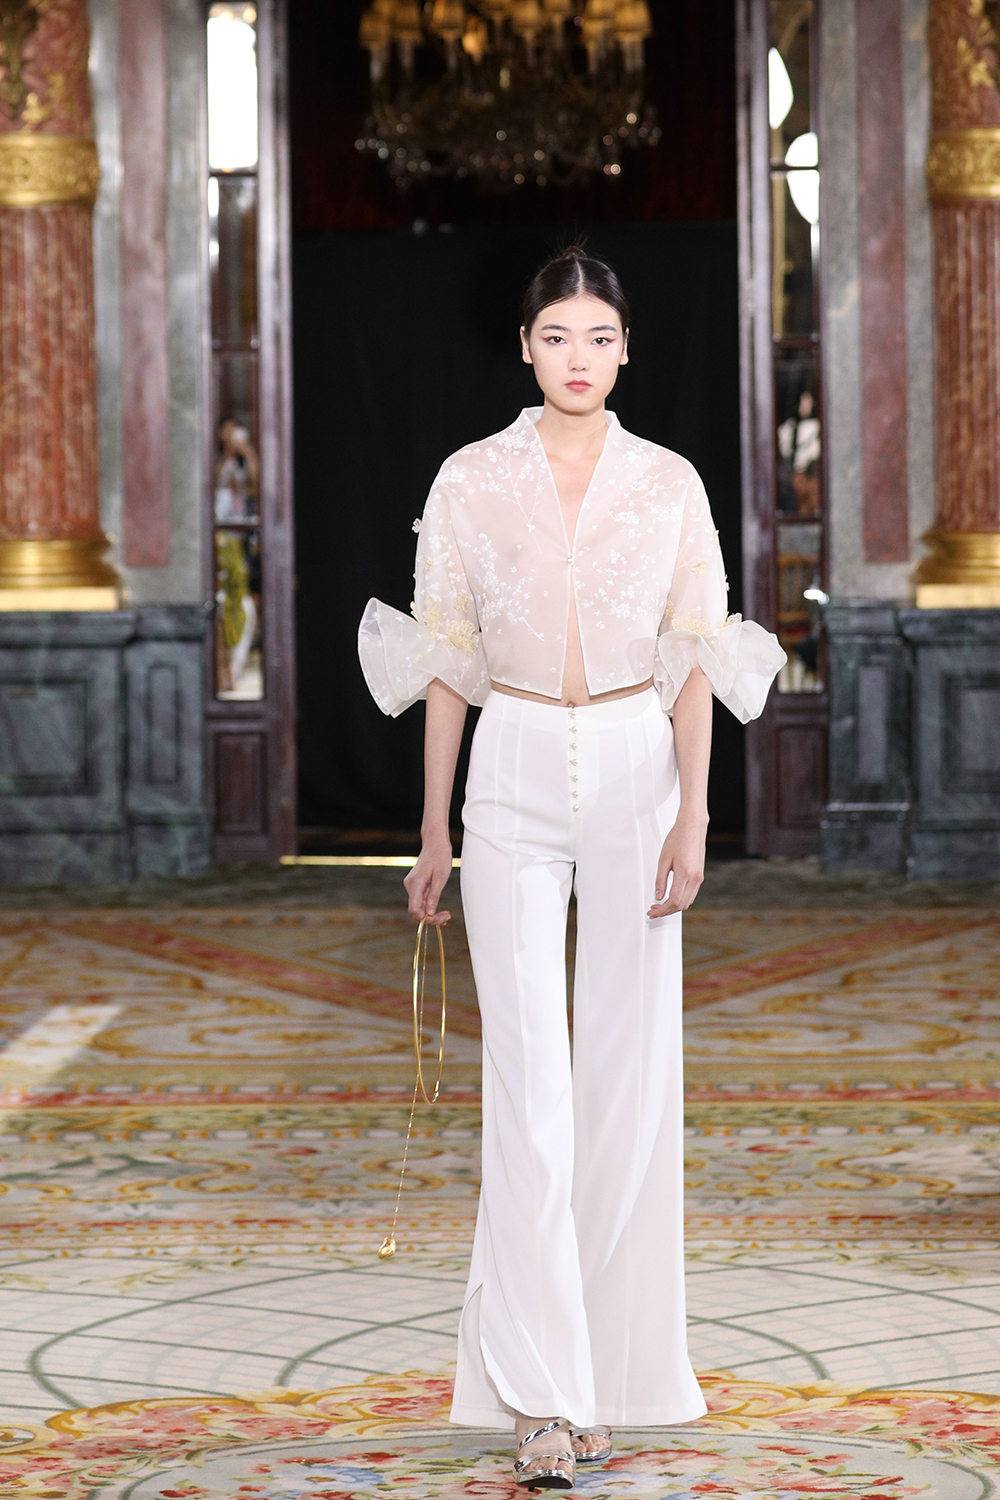 《紅樓夢》的時尚新詮釋！中國服裝設計師蘭玉Lanyu打造十二金釵「閨秀」新貌8.jpg